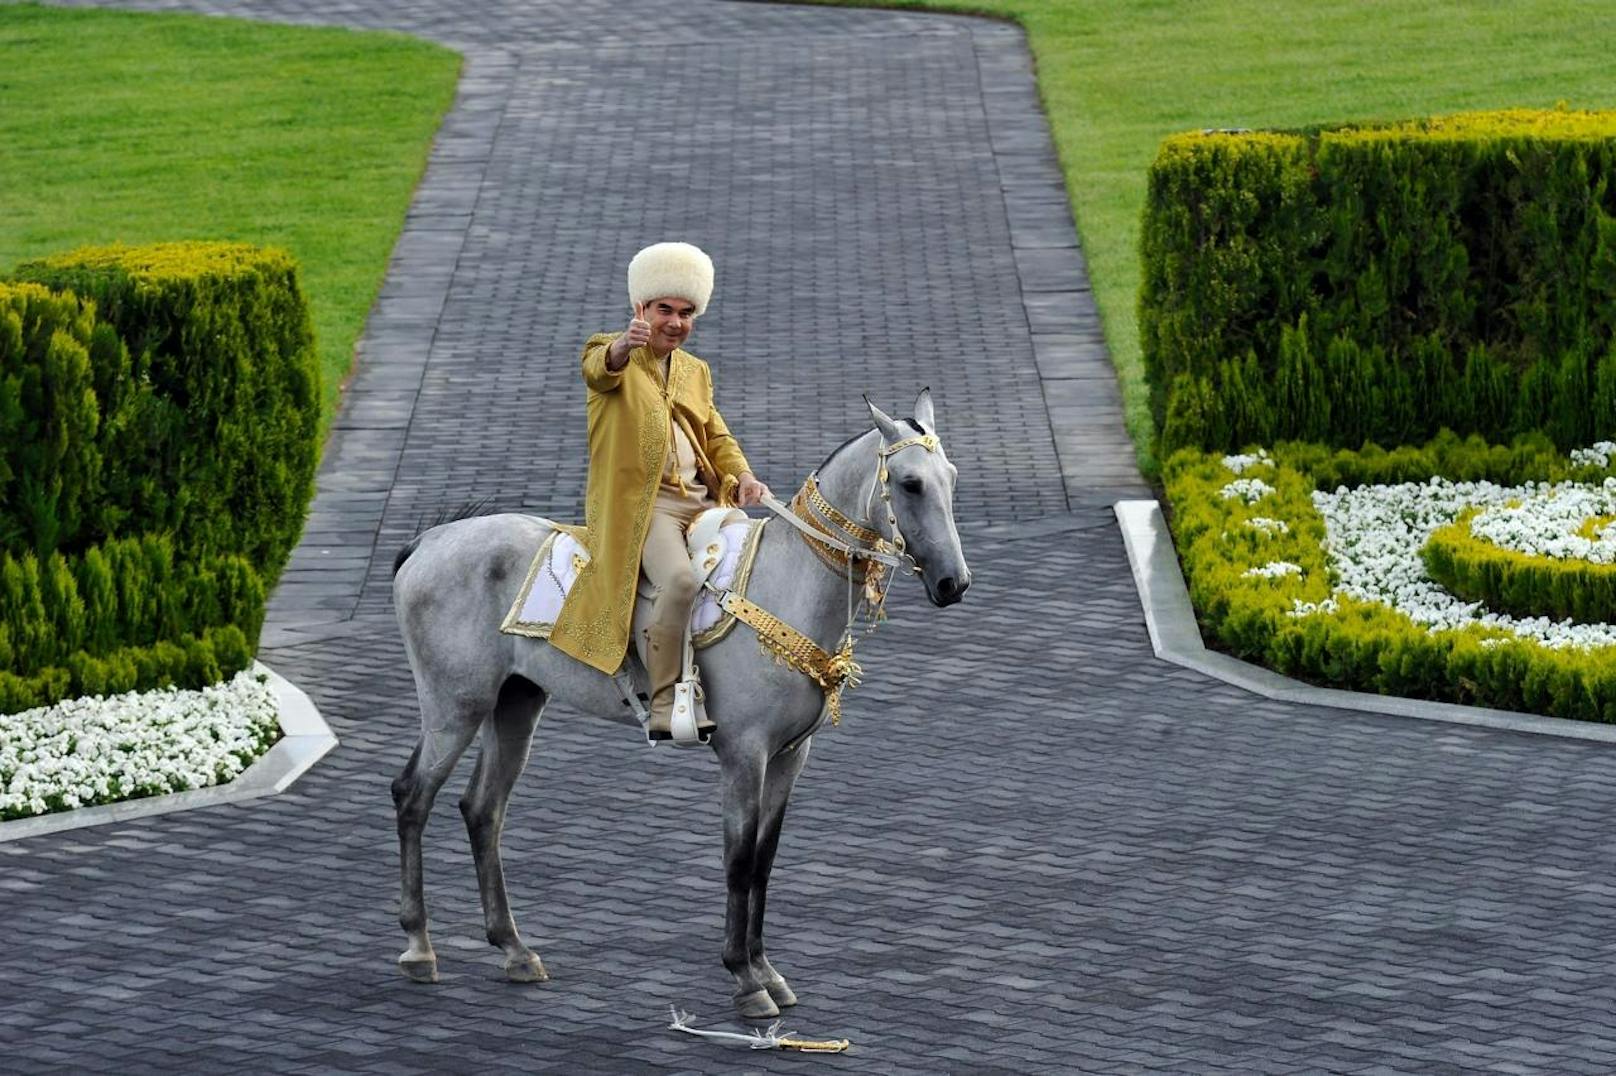 Anders der turkmenische Diktator Gurbanguly Berdymuhamedov: Er hat ein ganz besonders großes Herz für Pferde. In seinem Land Turkmenistan ist der "Tag des Pferdes" sogar ein staatlicher Feiertag.